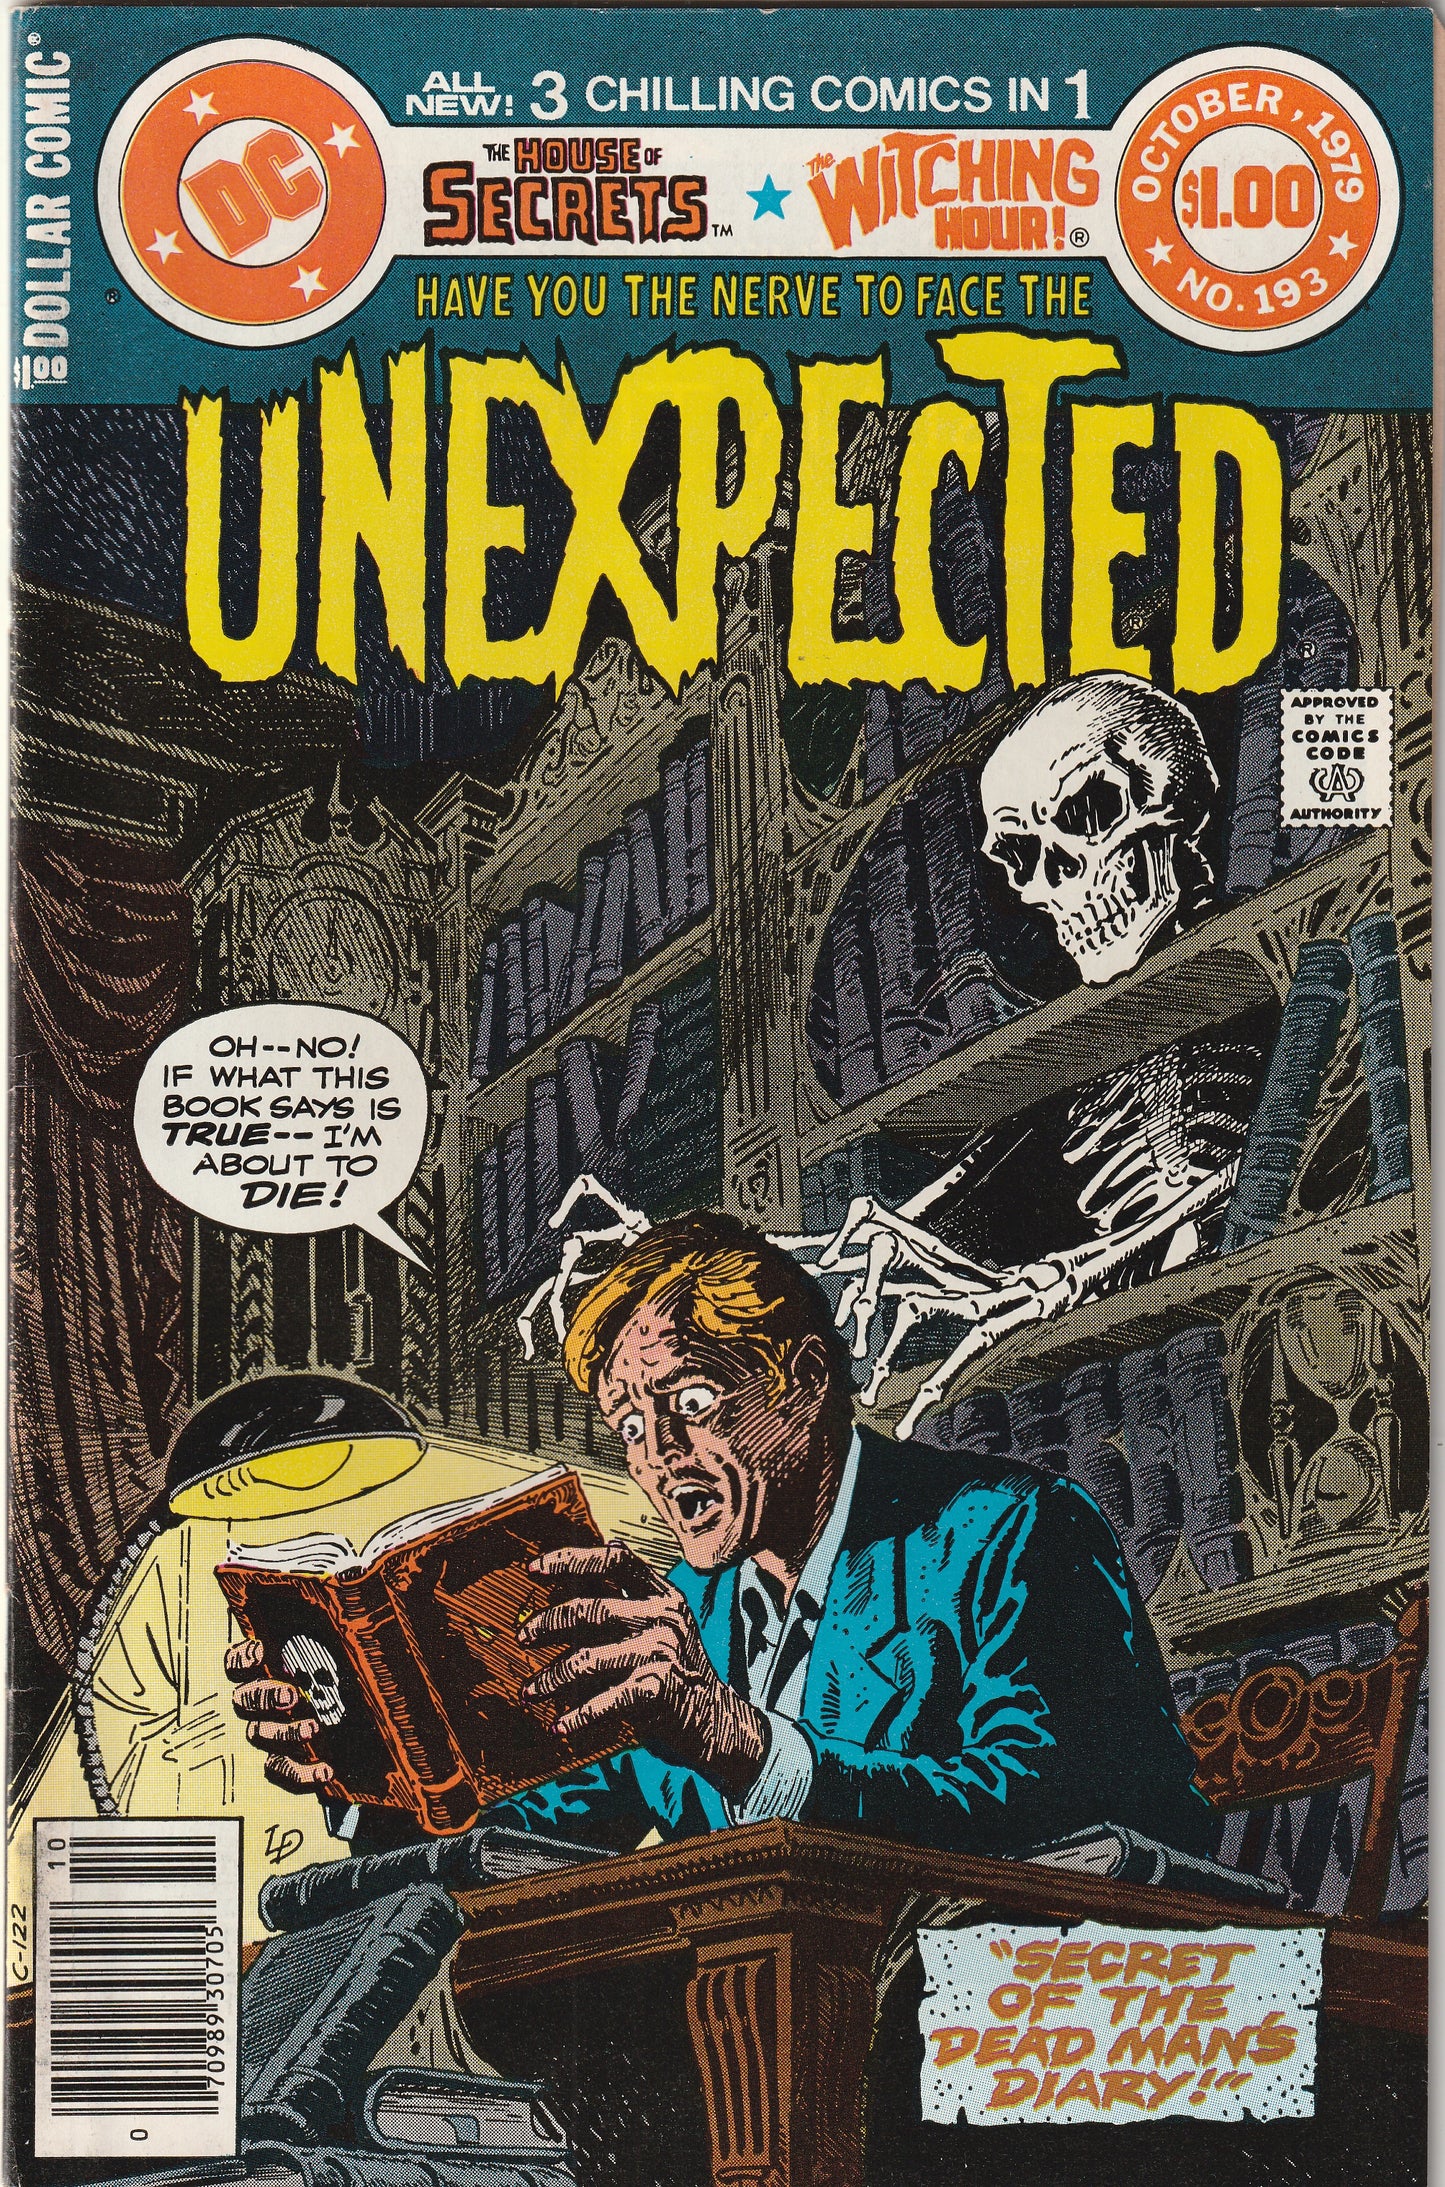 Unexpected #193 (1979) - 3 comics in 1